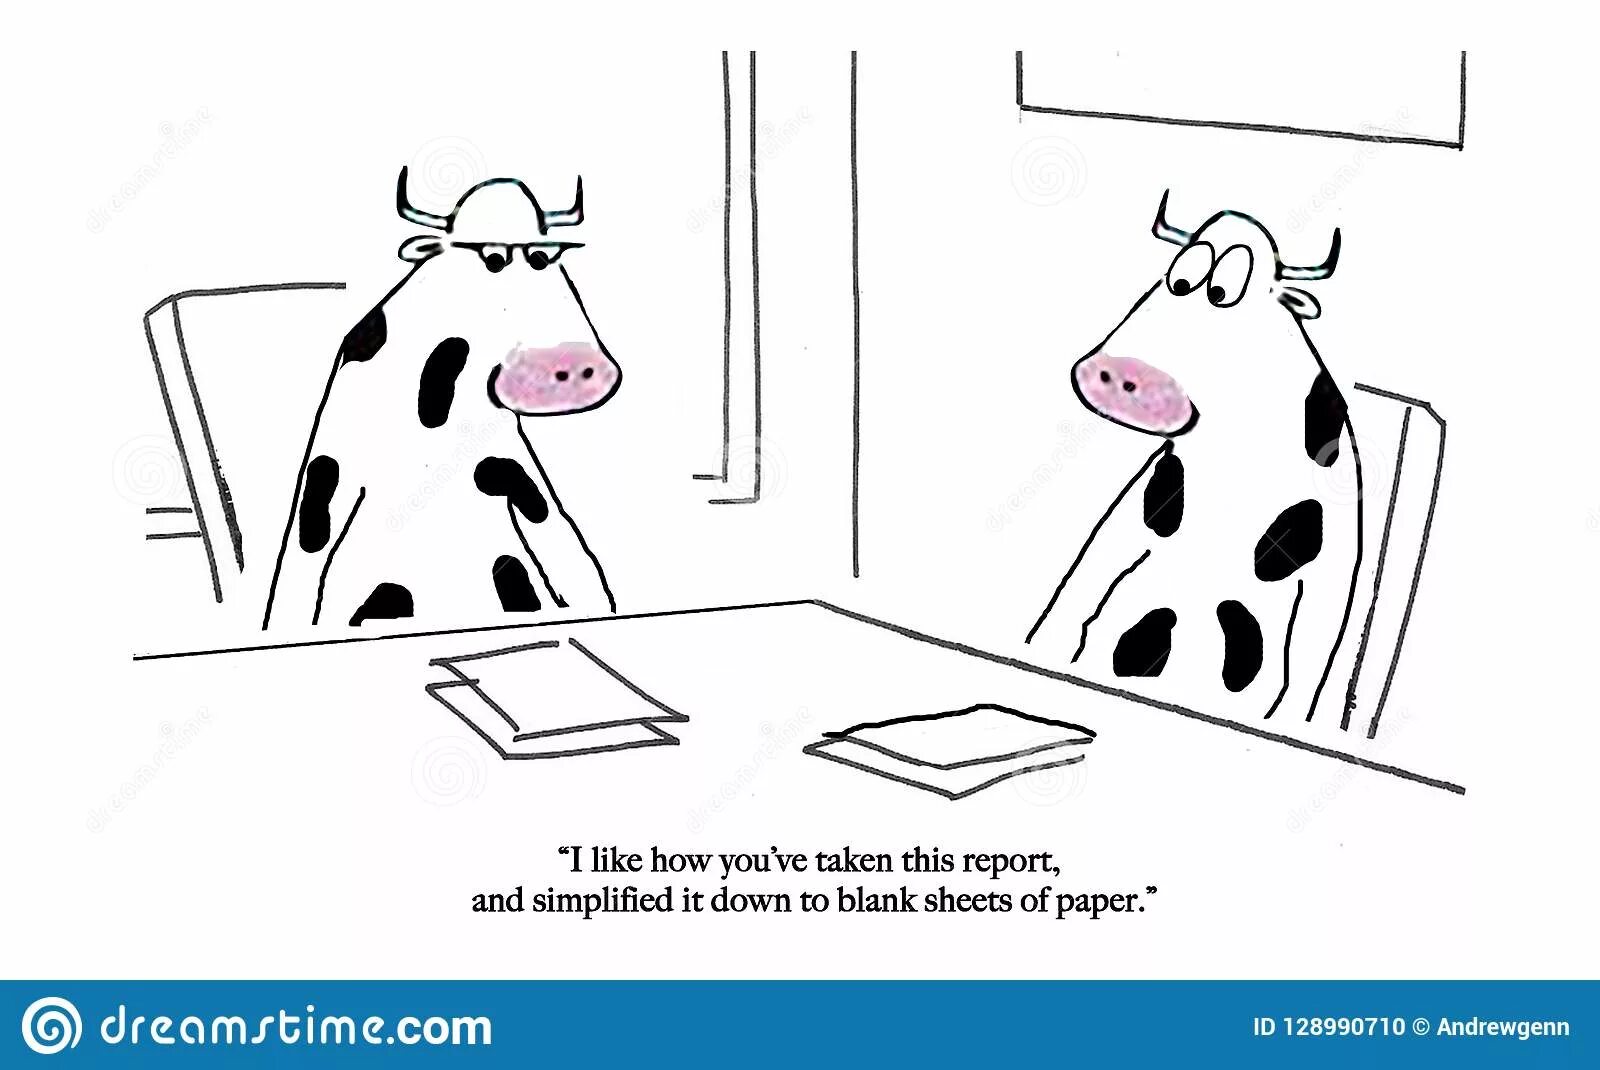 Мысли коровы. Мысли коровы комикс. Прикольные картинки про мысли коров. Don't have a Cow, man. Born to annoy. Скороговорка хороводоводы